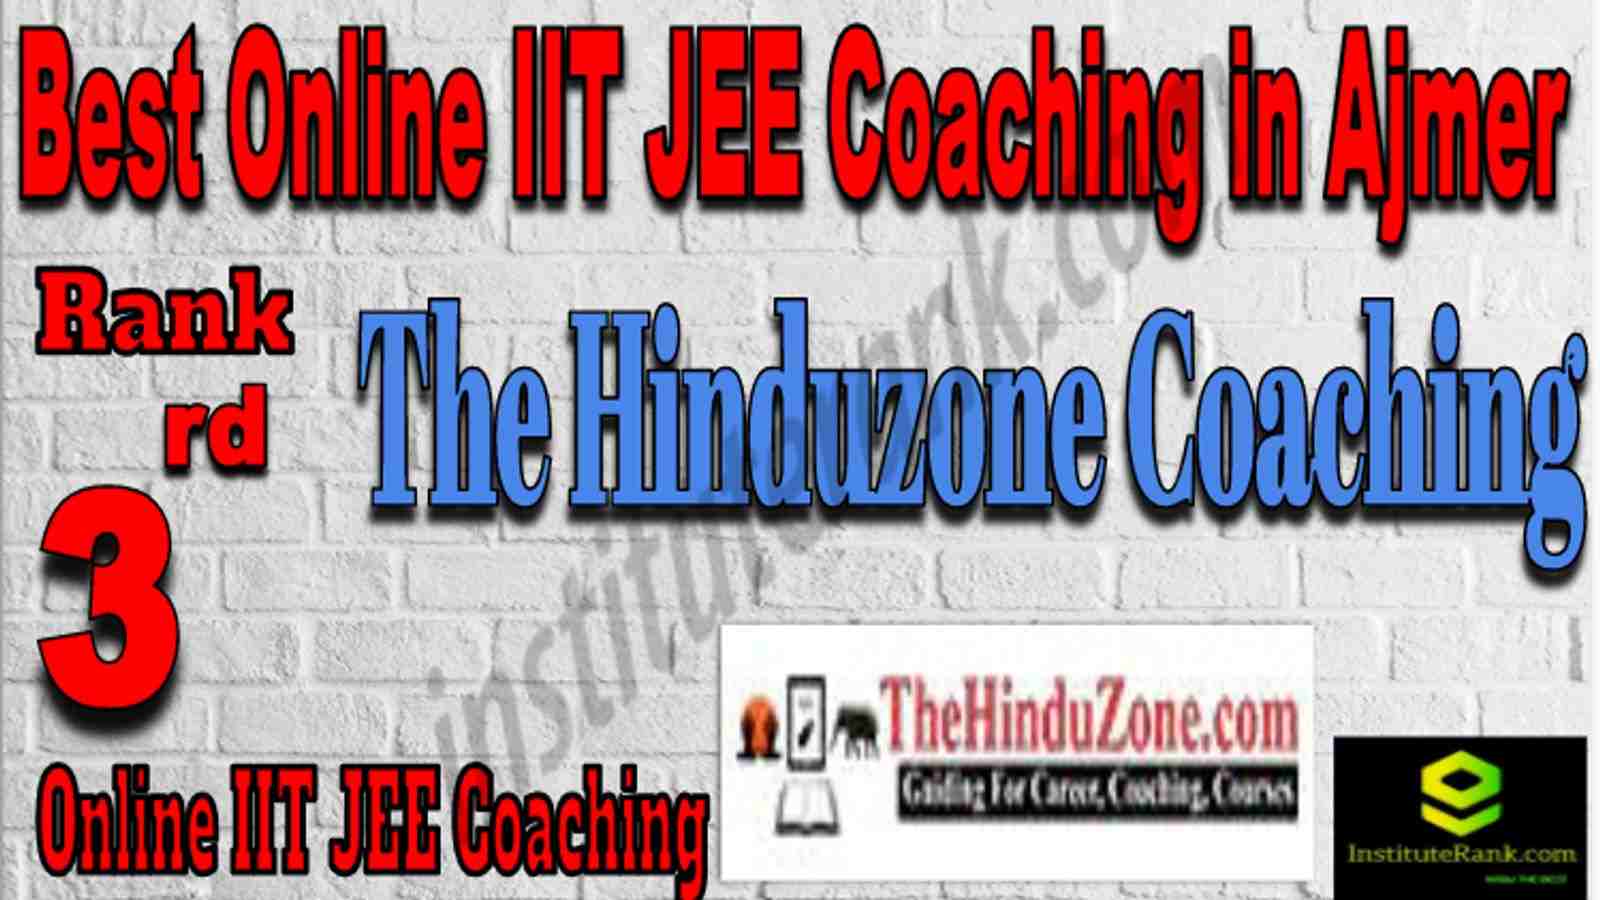 Rank 3 Best Online IIT JEE Coaching in Ajmer